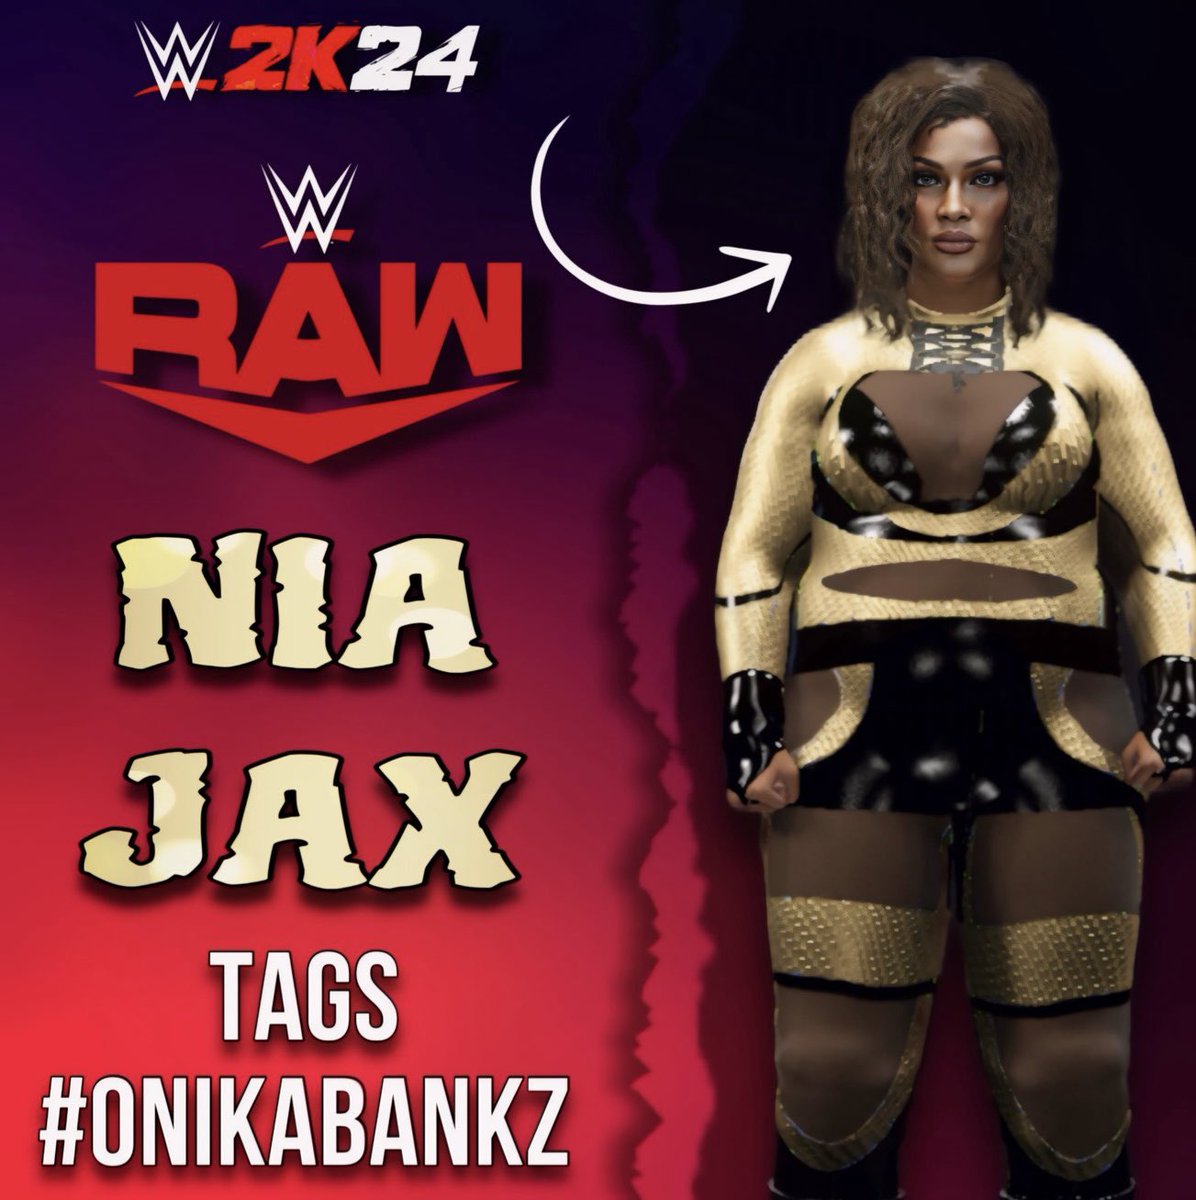 @LinaFanene Raw Gear is now available for download on #WWE2K24 ! 💛🖤

Tags - #onikabankz 

#nxt #nxtuk #wwe #wwegames #wwe2k #WWE2K24 #niajax #niajaxwwe #impactwrestling #aew #aewdynamite